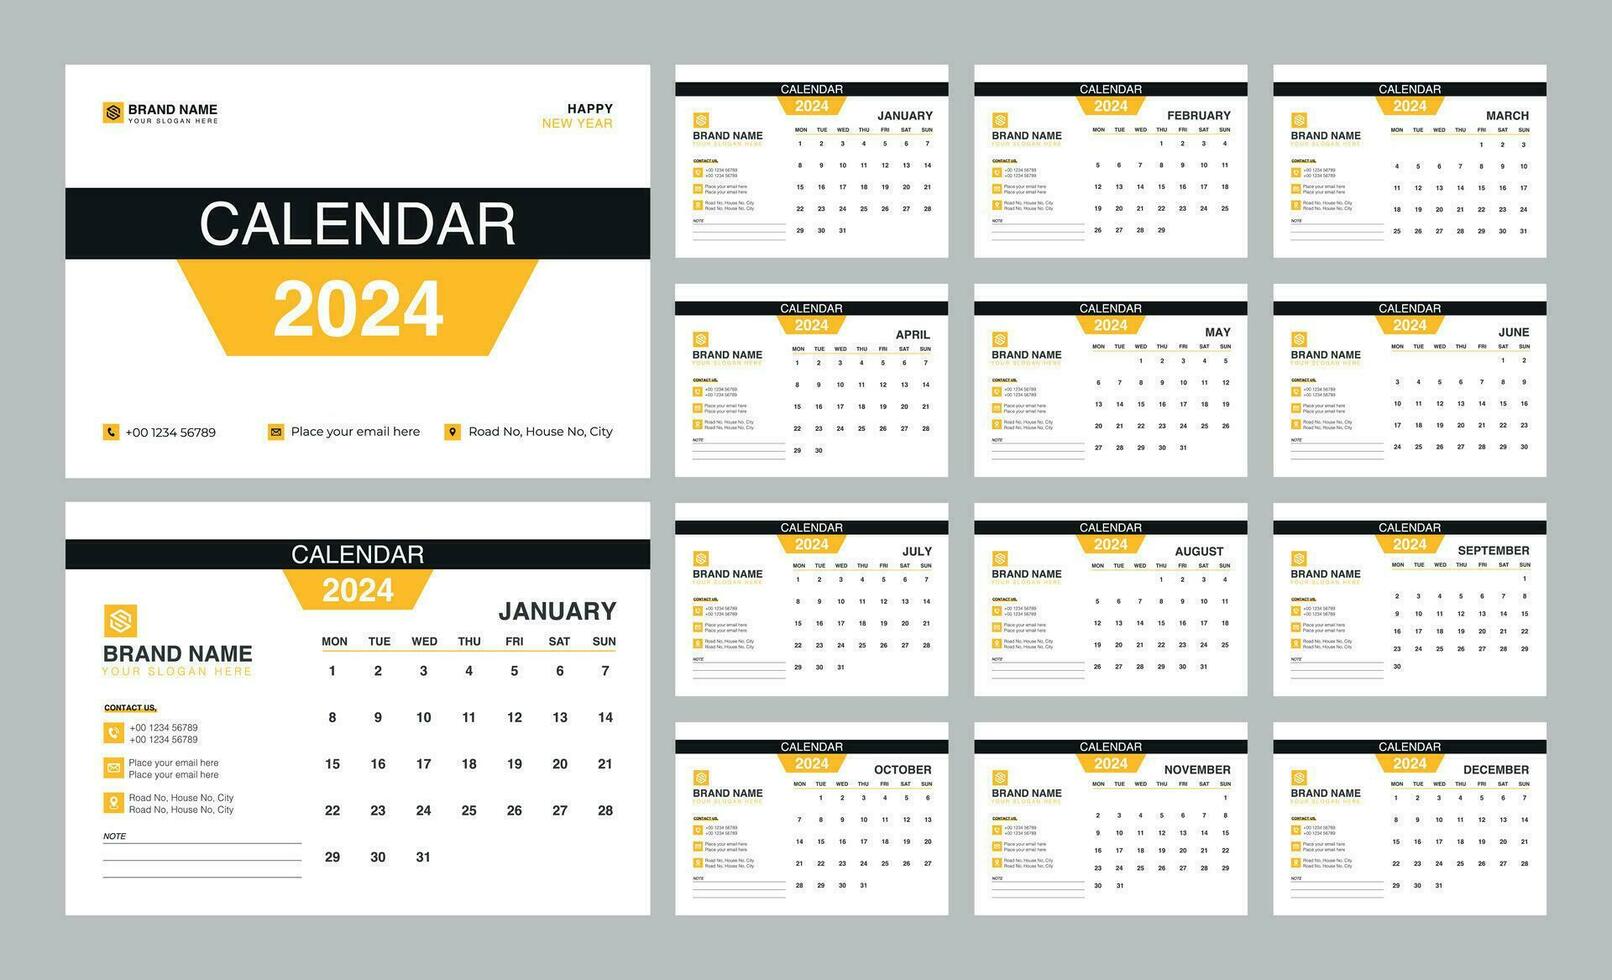 bureau calendrier 2024 modèle. 12 mois inclus. modifiable 2024 calendrier conception. vecteur illustration